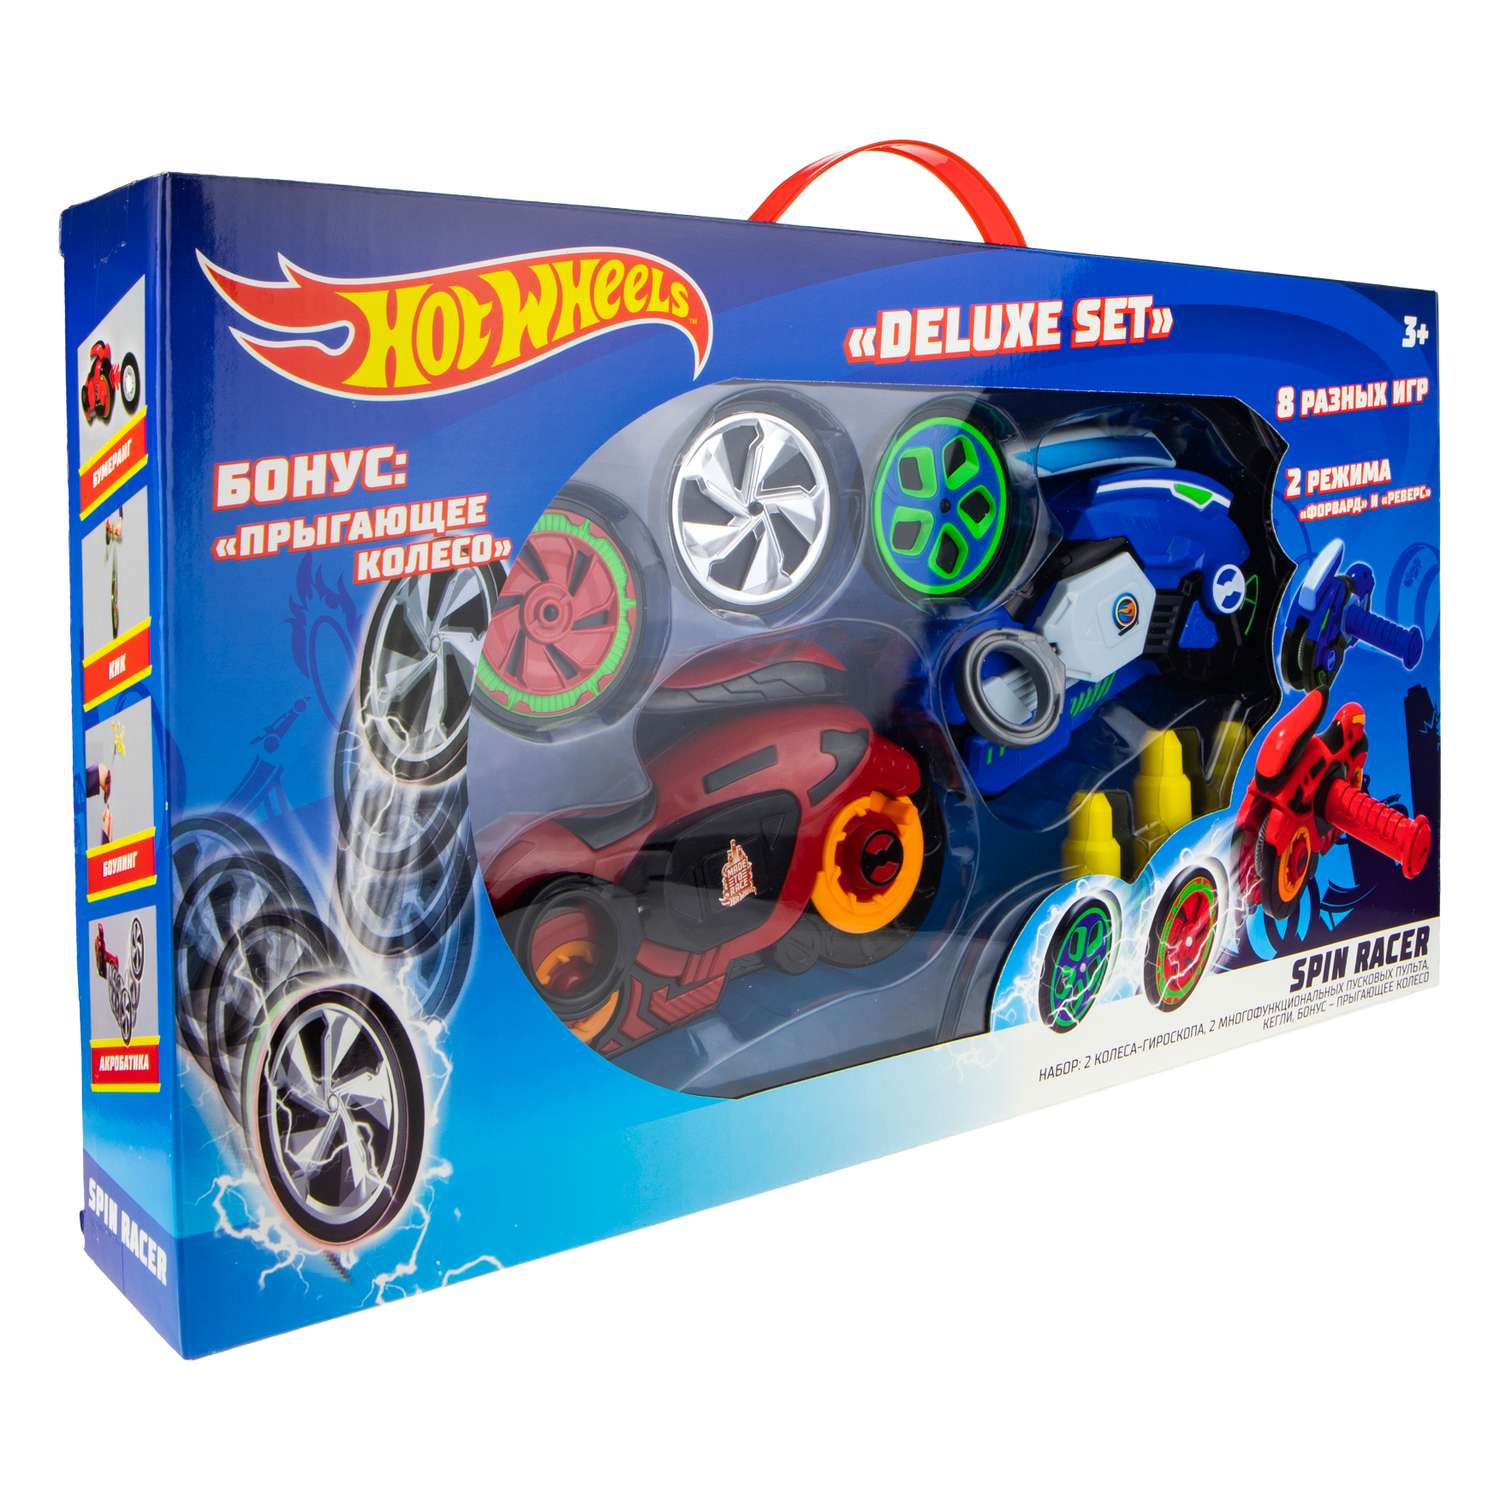 Игровой набор Hot Wheels Spin Racer Deluxe Set 2 игрушечных мотоцикла с колесами-гироскопами Т19375 - фото 15